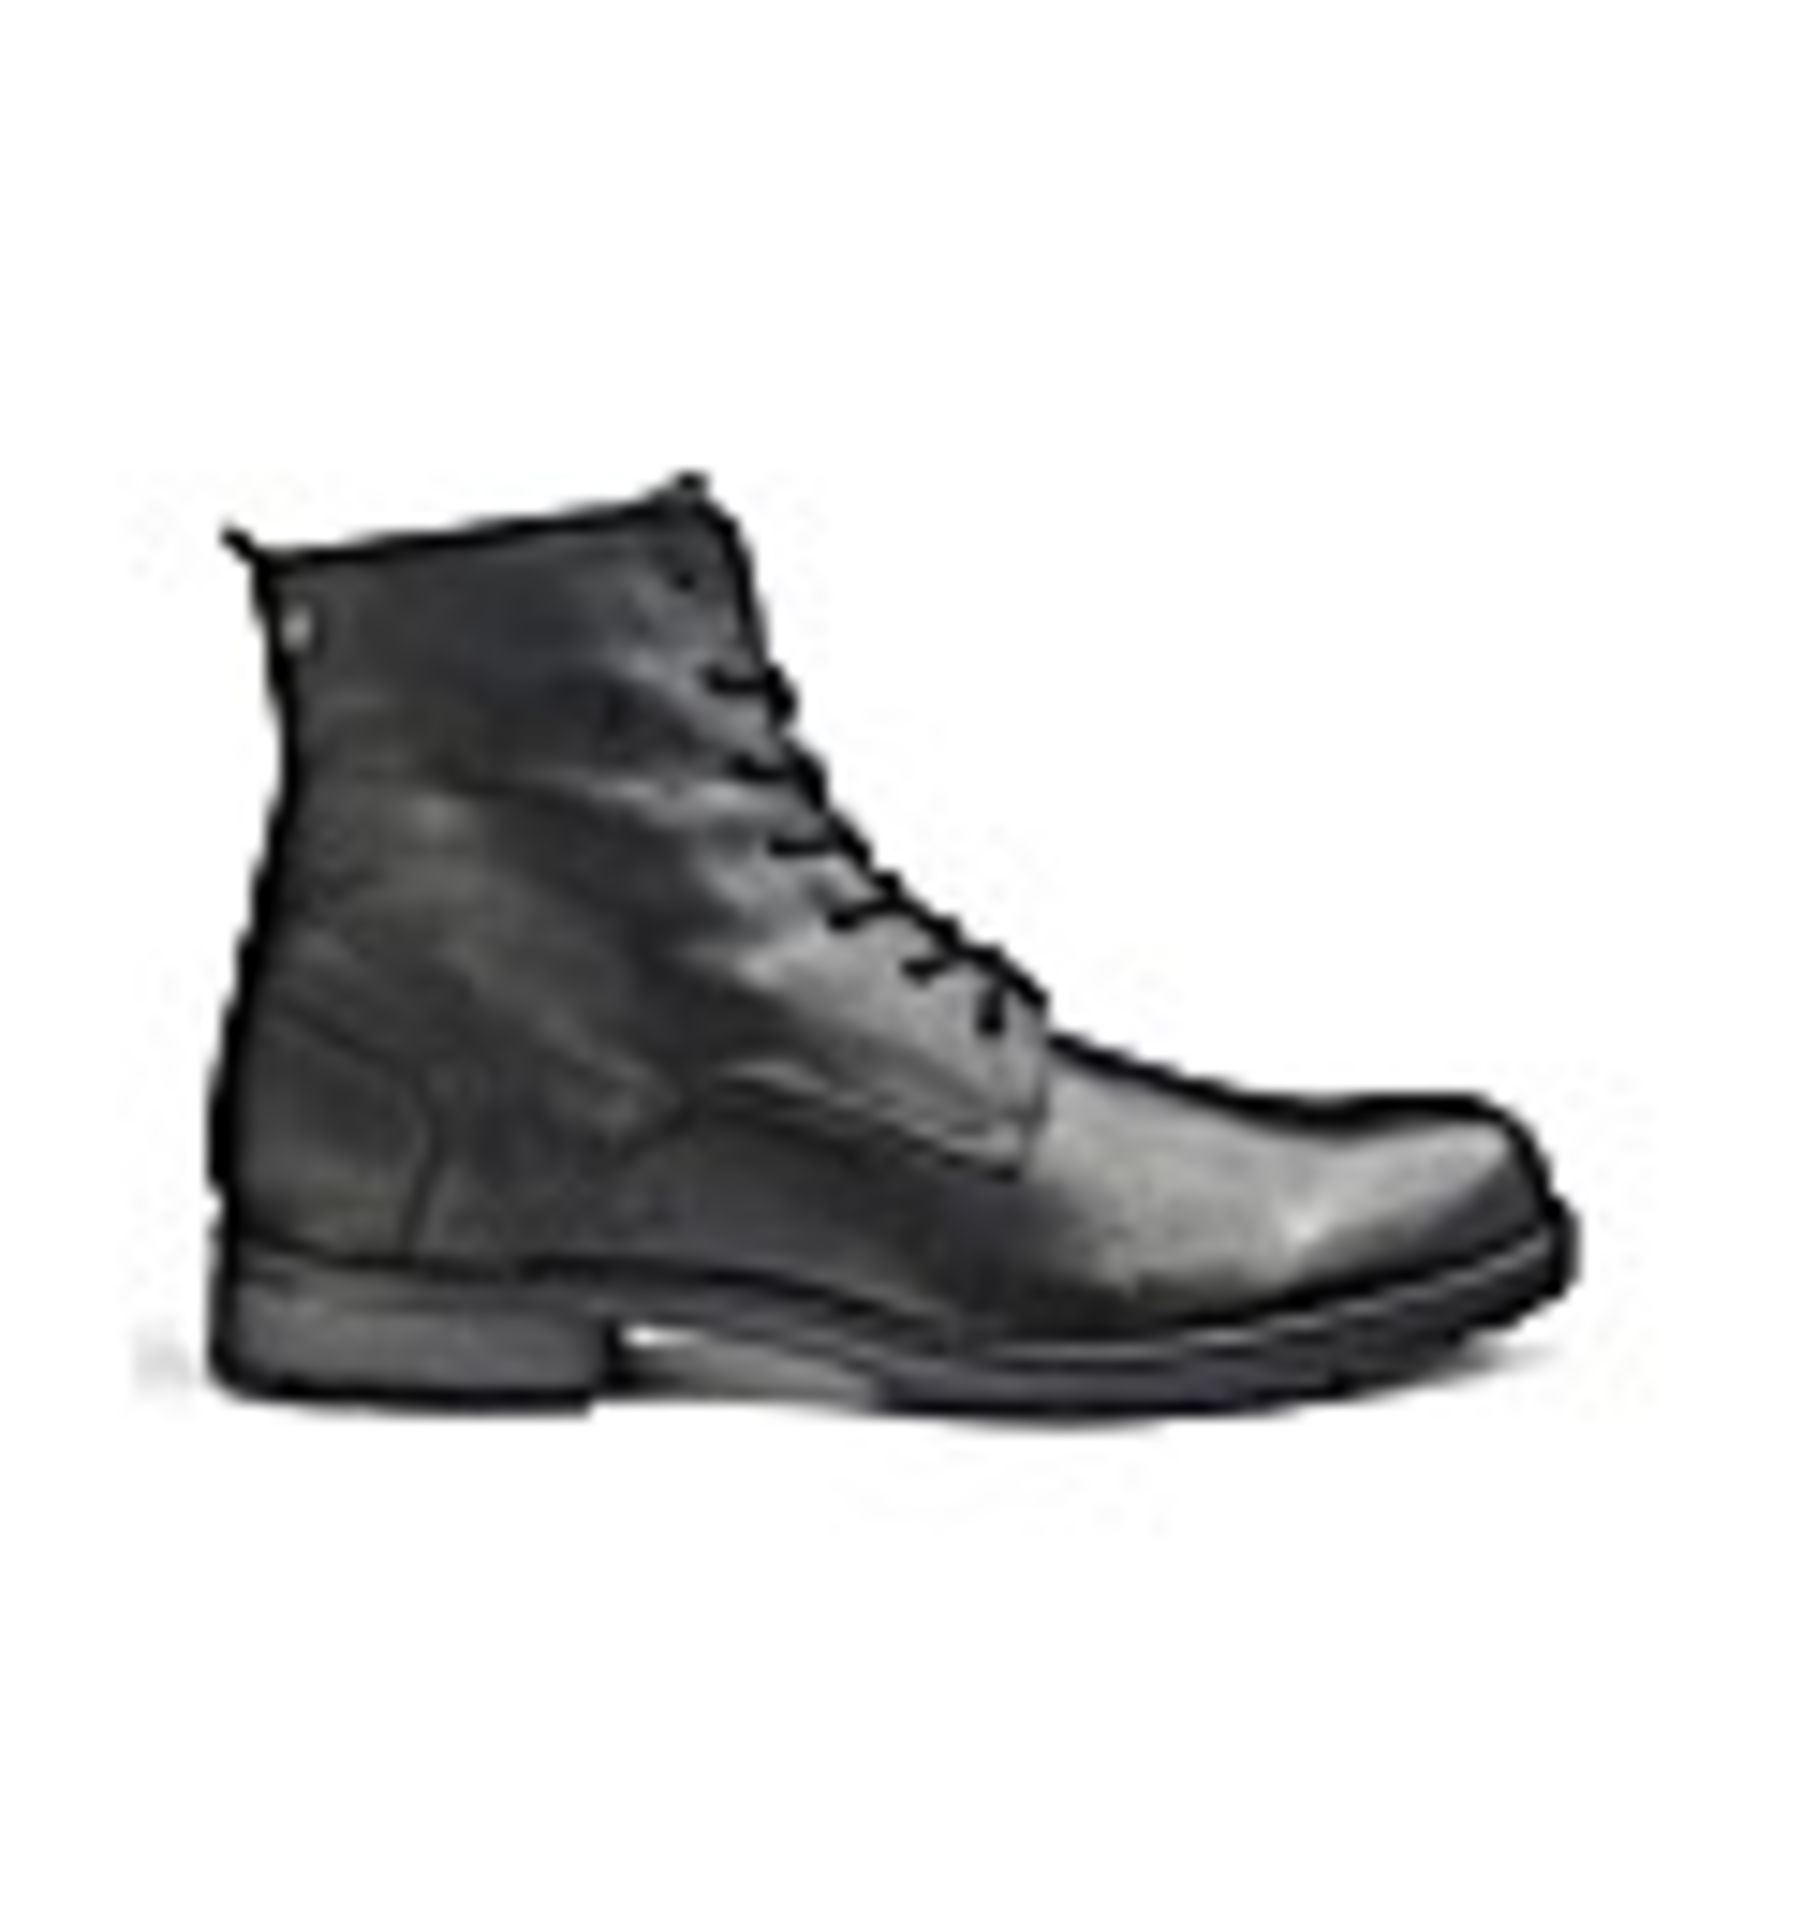 + VAT Brand New Pair Gents Black J & J Worca Boots Size 7